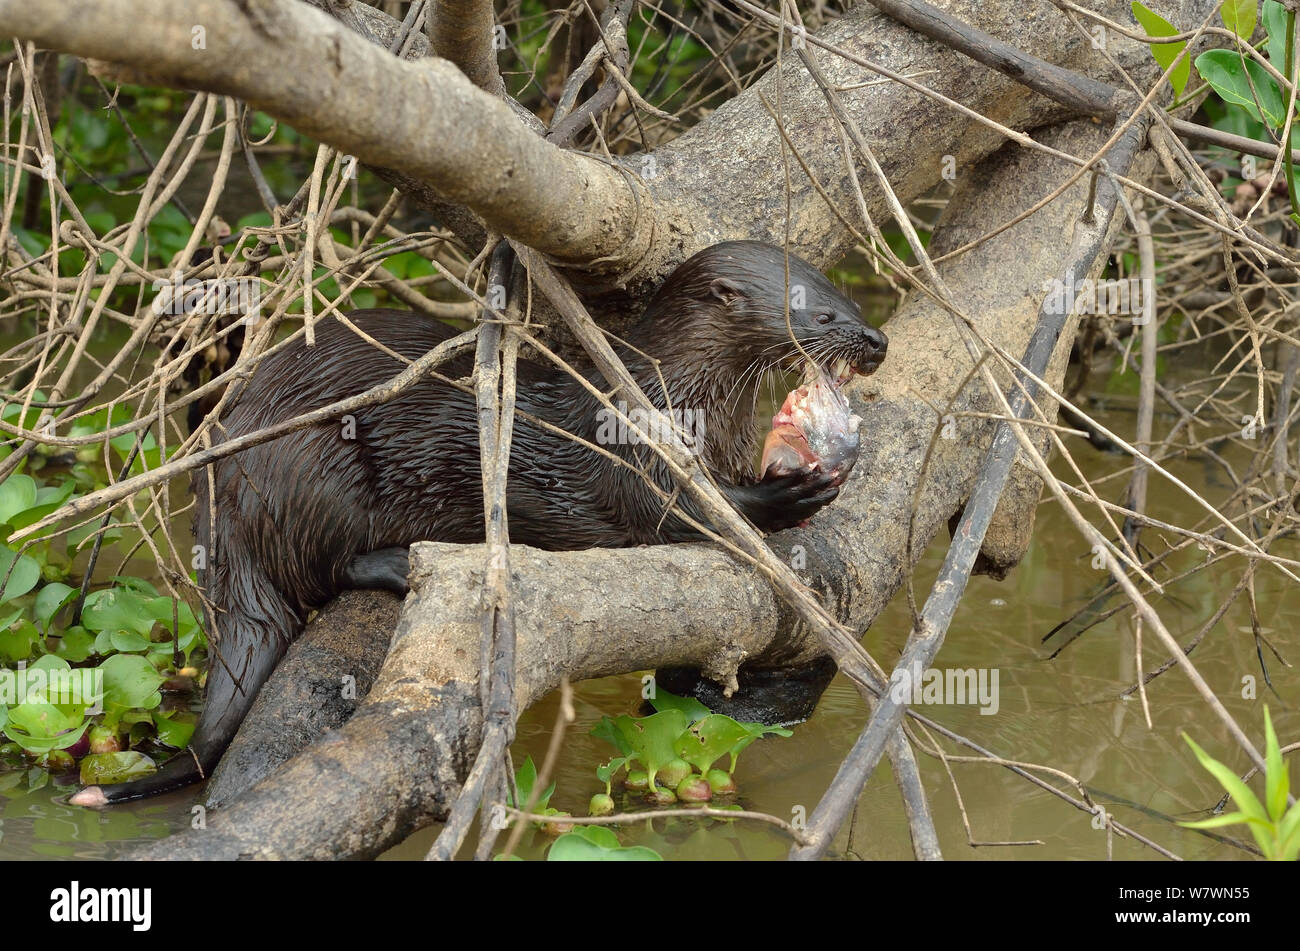 Neotropical loutre de rivière (Lontra longicaudis) manger un poisson, Pantanal, Mato Grosso, l'ouest du Brésil. Banque D'Images